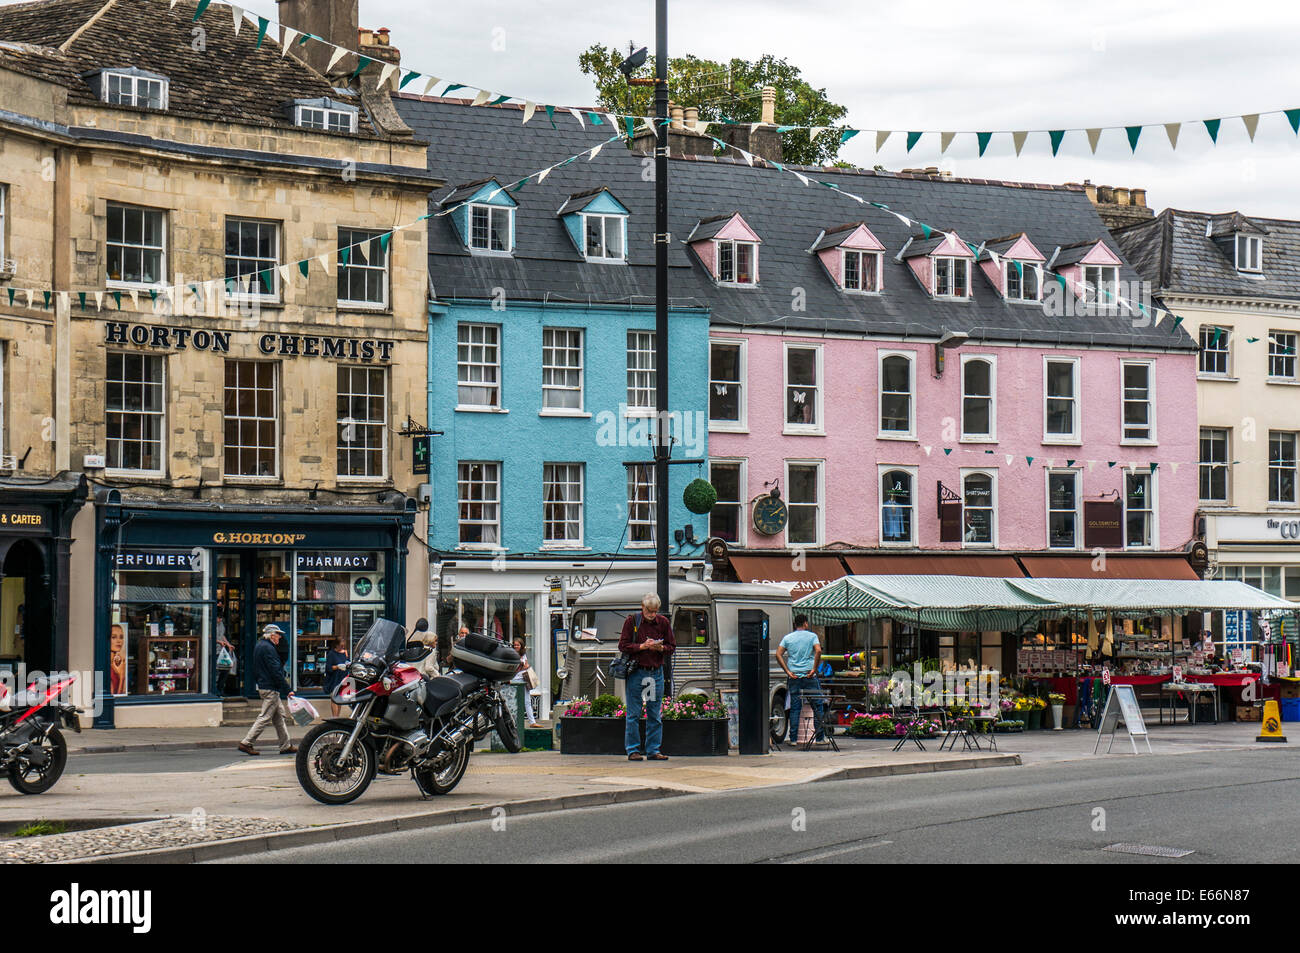 Centro città vista, con edifici del periodo, negozi e bancarelle del mercato, Cirencester, Cotswolds, Gloucestershire, Inghilterra, Regno Unito. Foto Stock